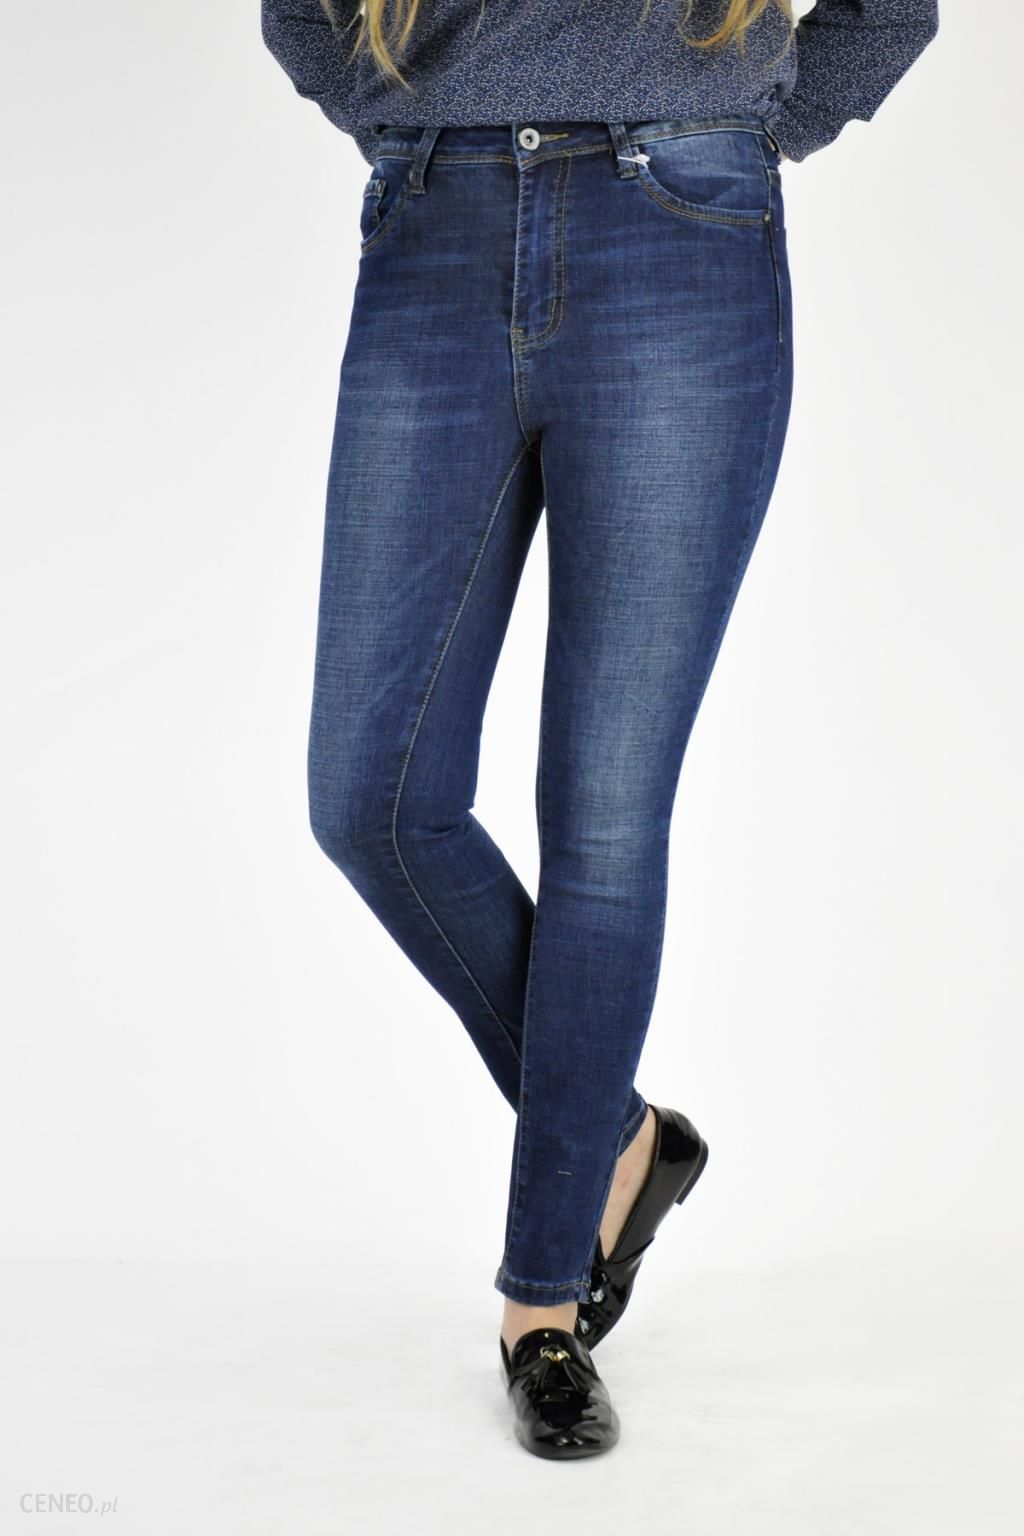 Dopasowane jeansy stalowy niebieski Efekt znoszenia Moda Jeansy Dopasowane jeansy 